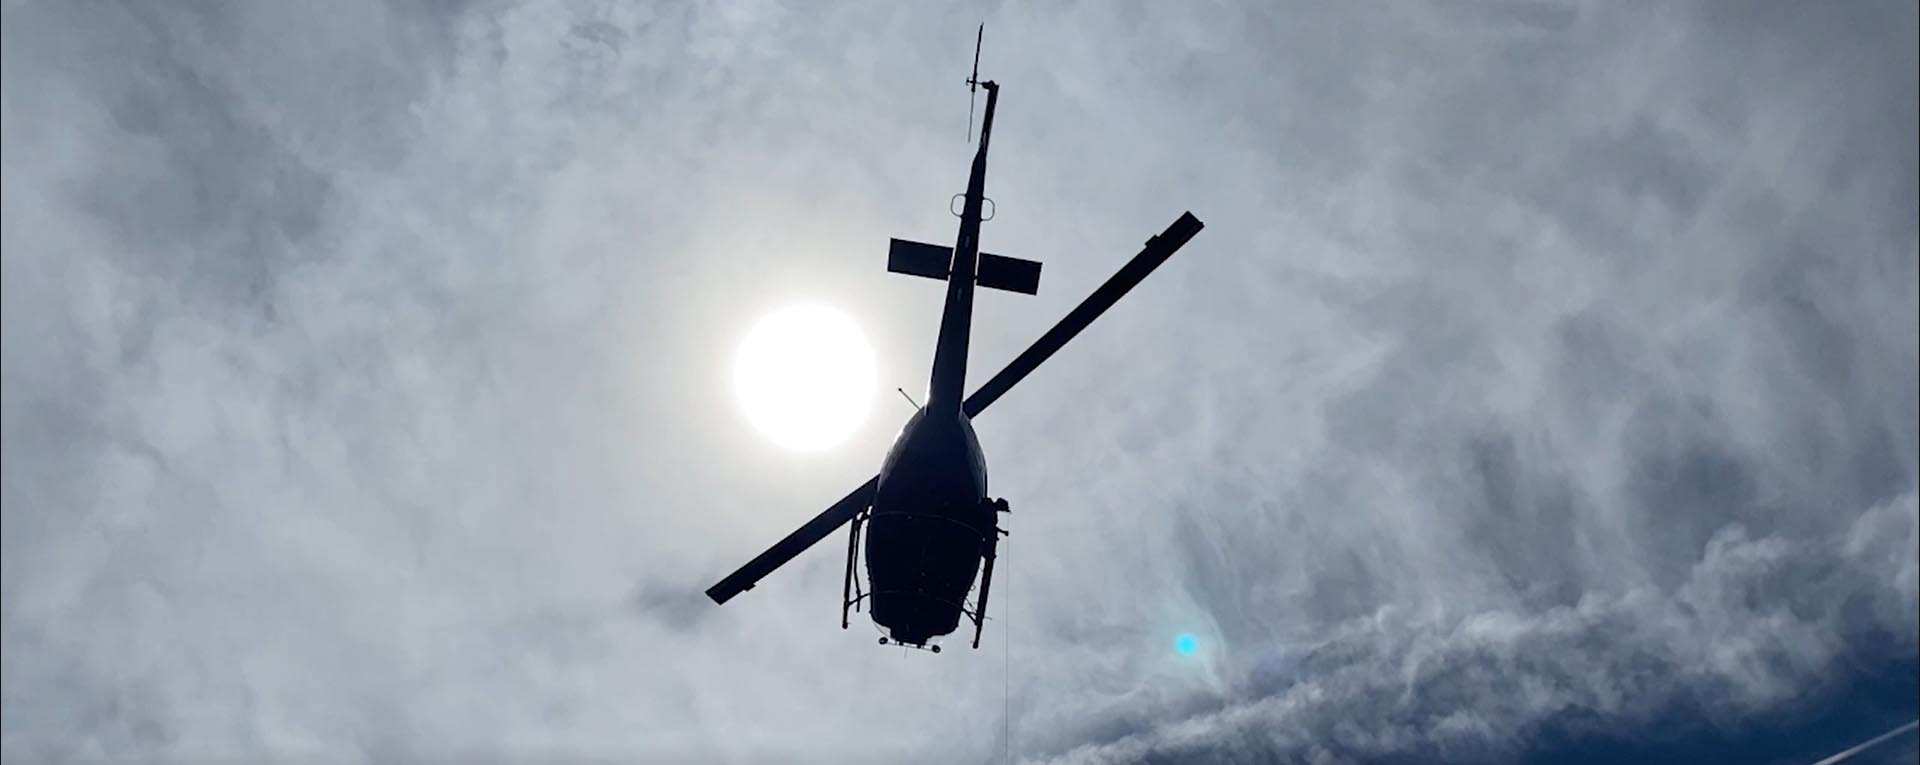 Helicóptero volando en el cielo